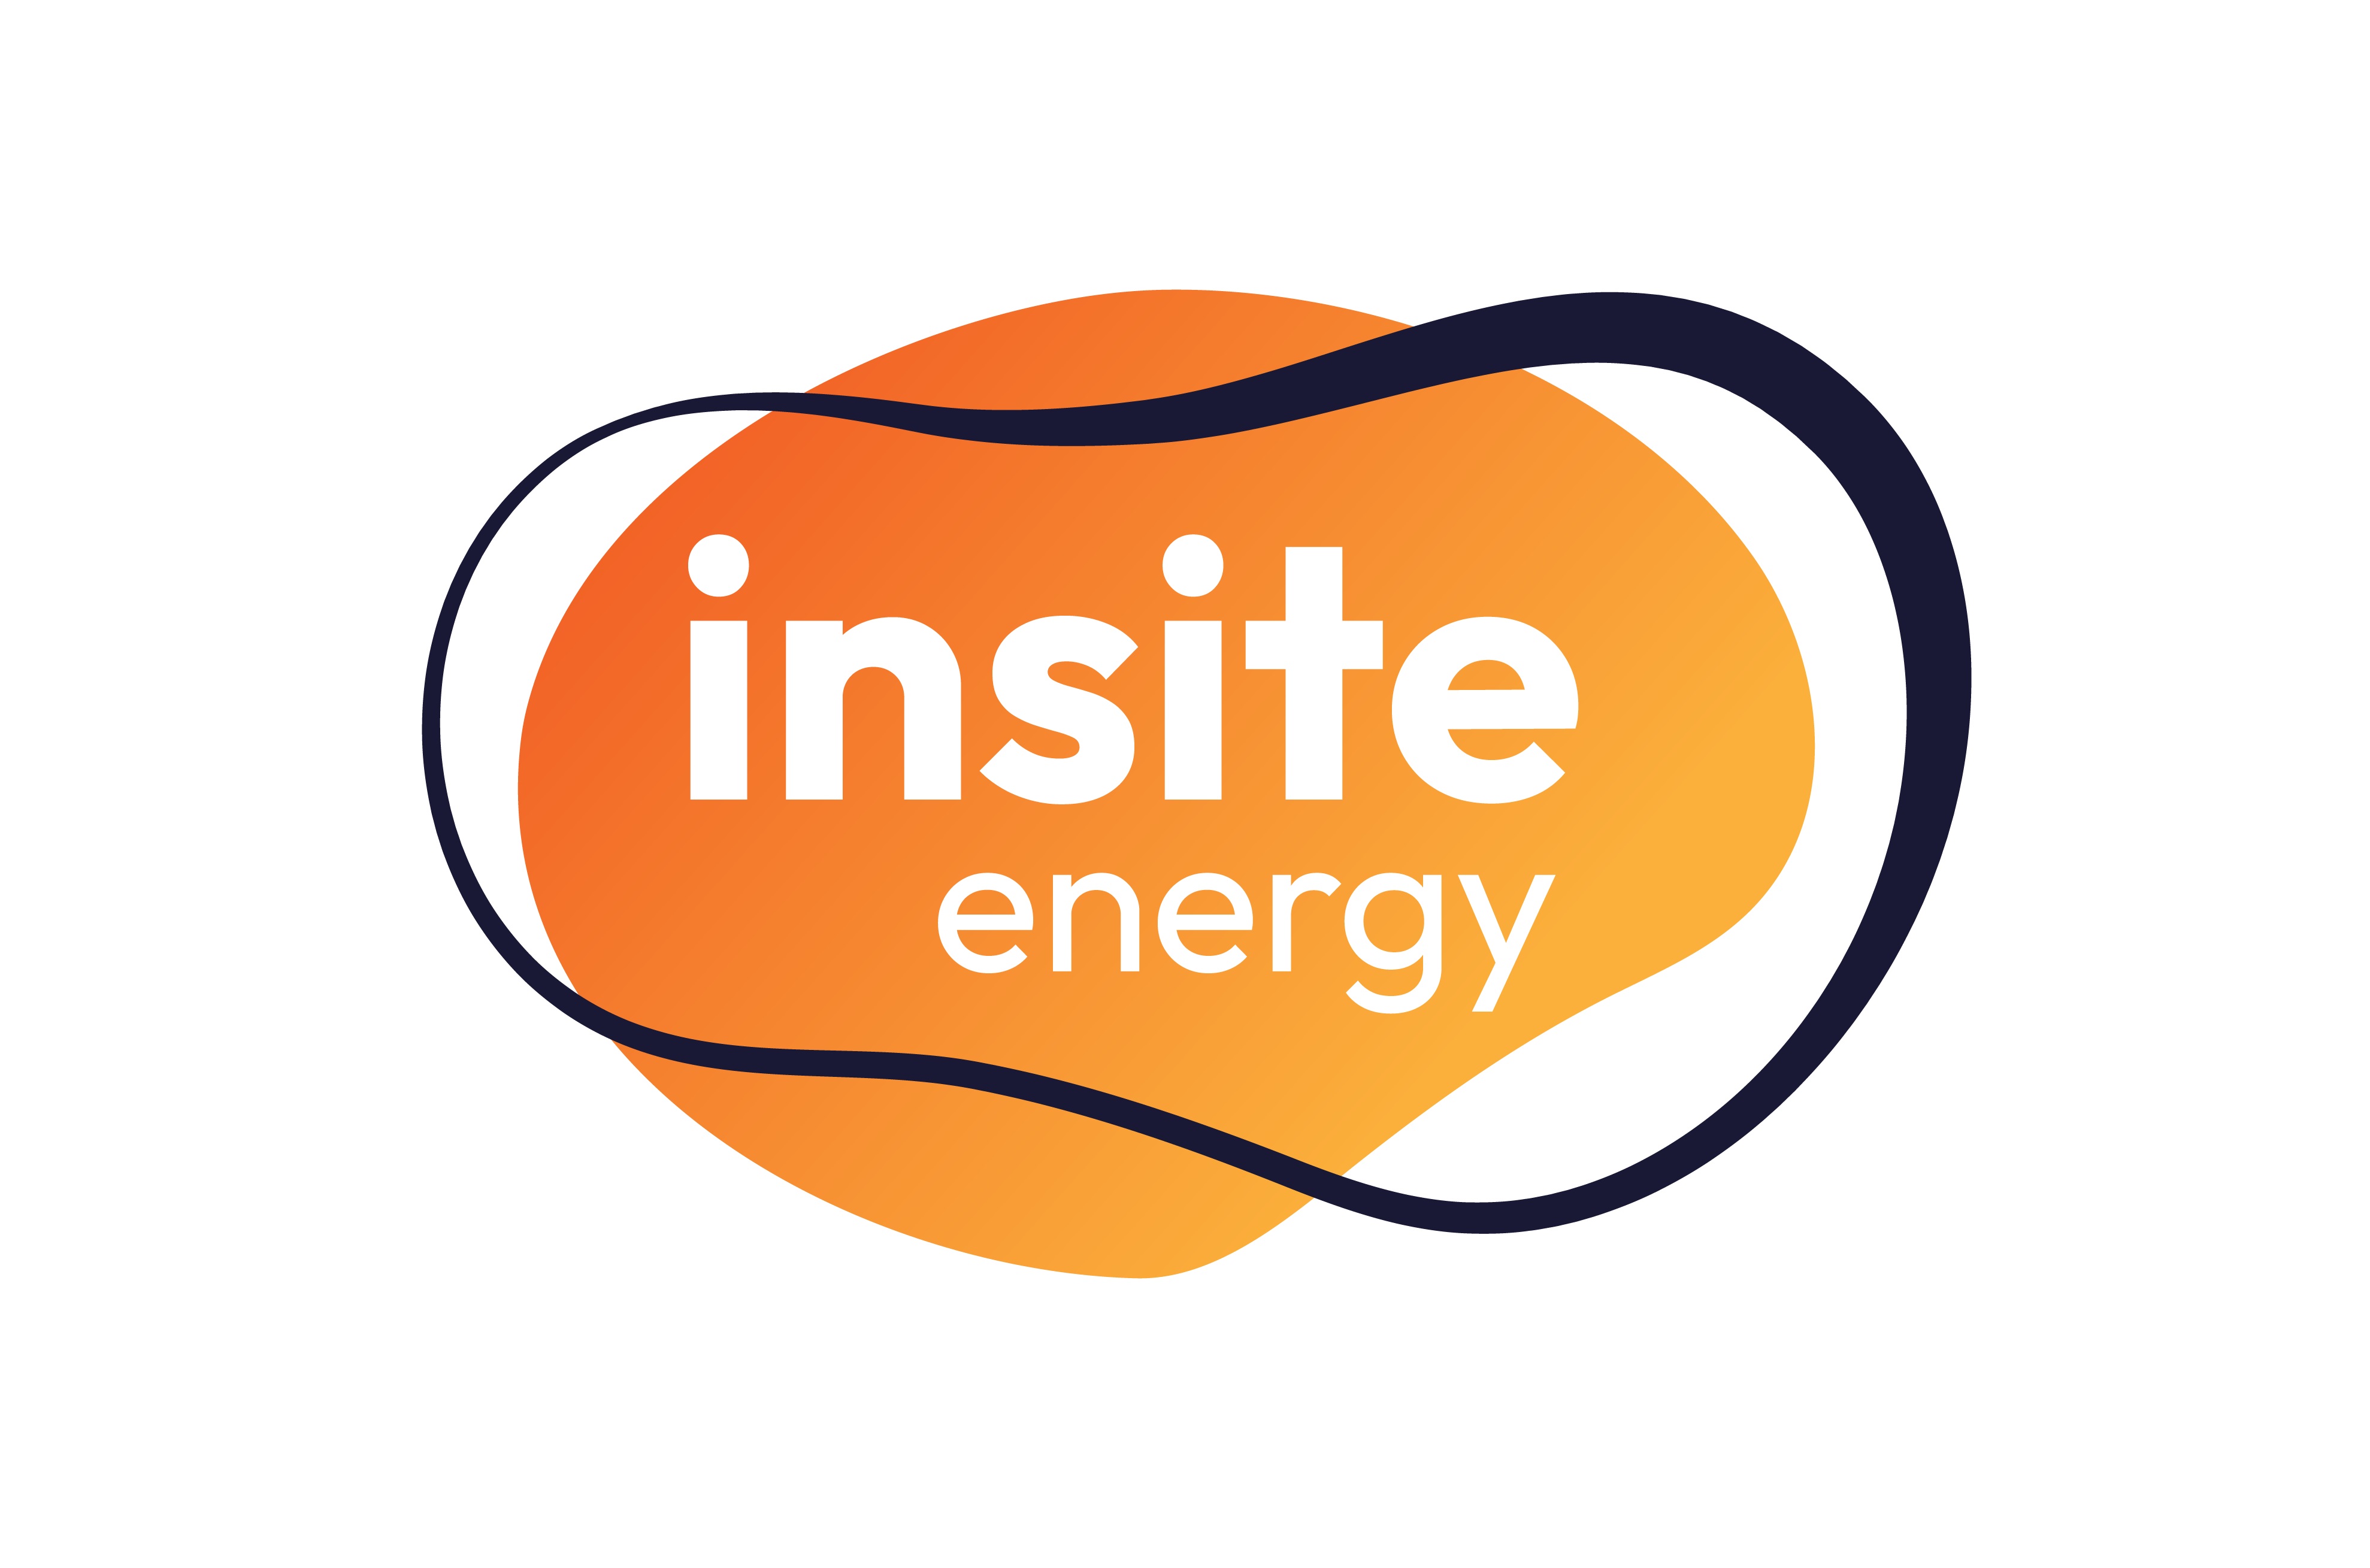 Insite Energy logo